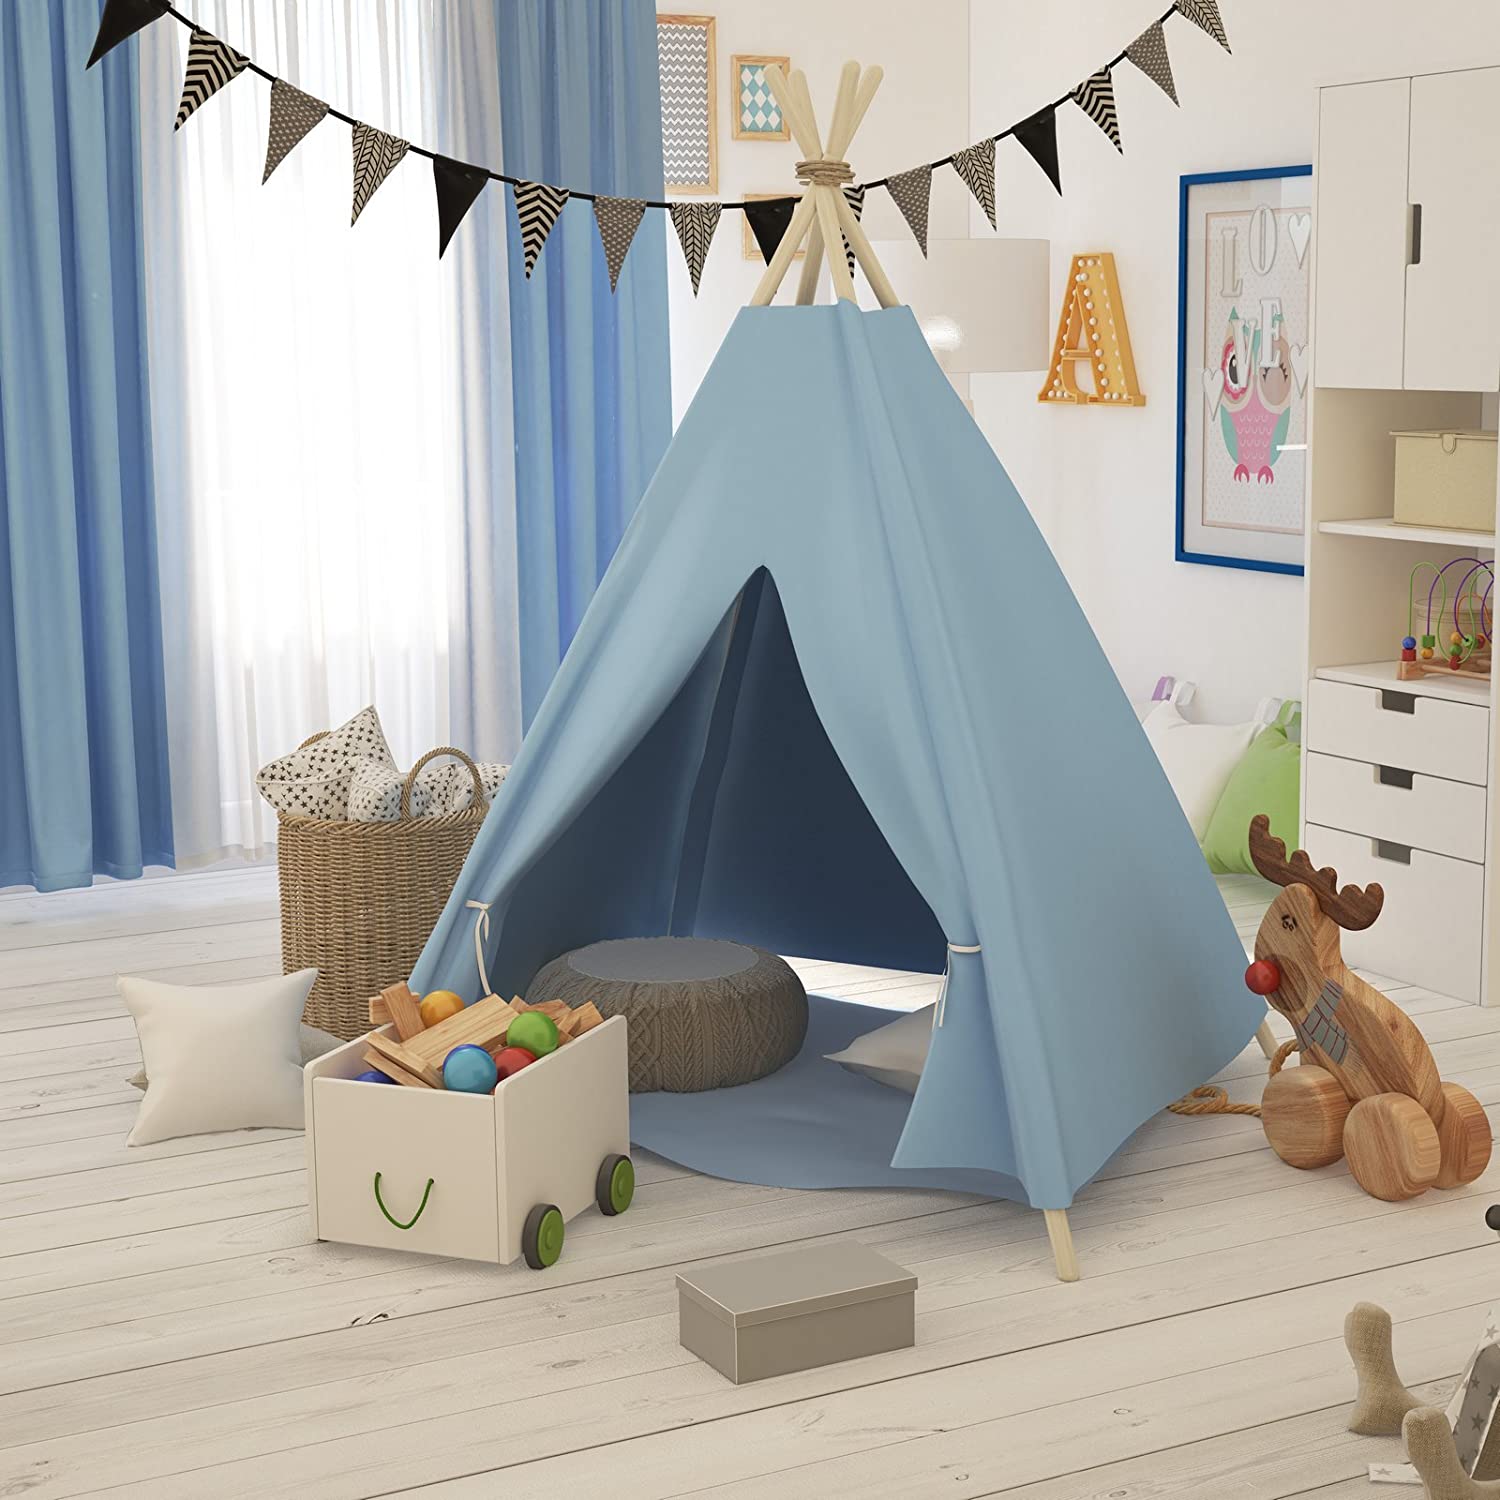 Elfique Tipi Teepee Play Tent, Children Tent, Garden Tent With Blanket By K